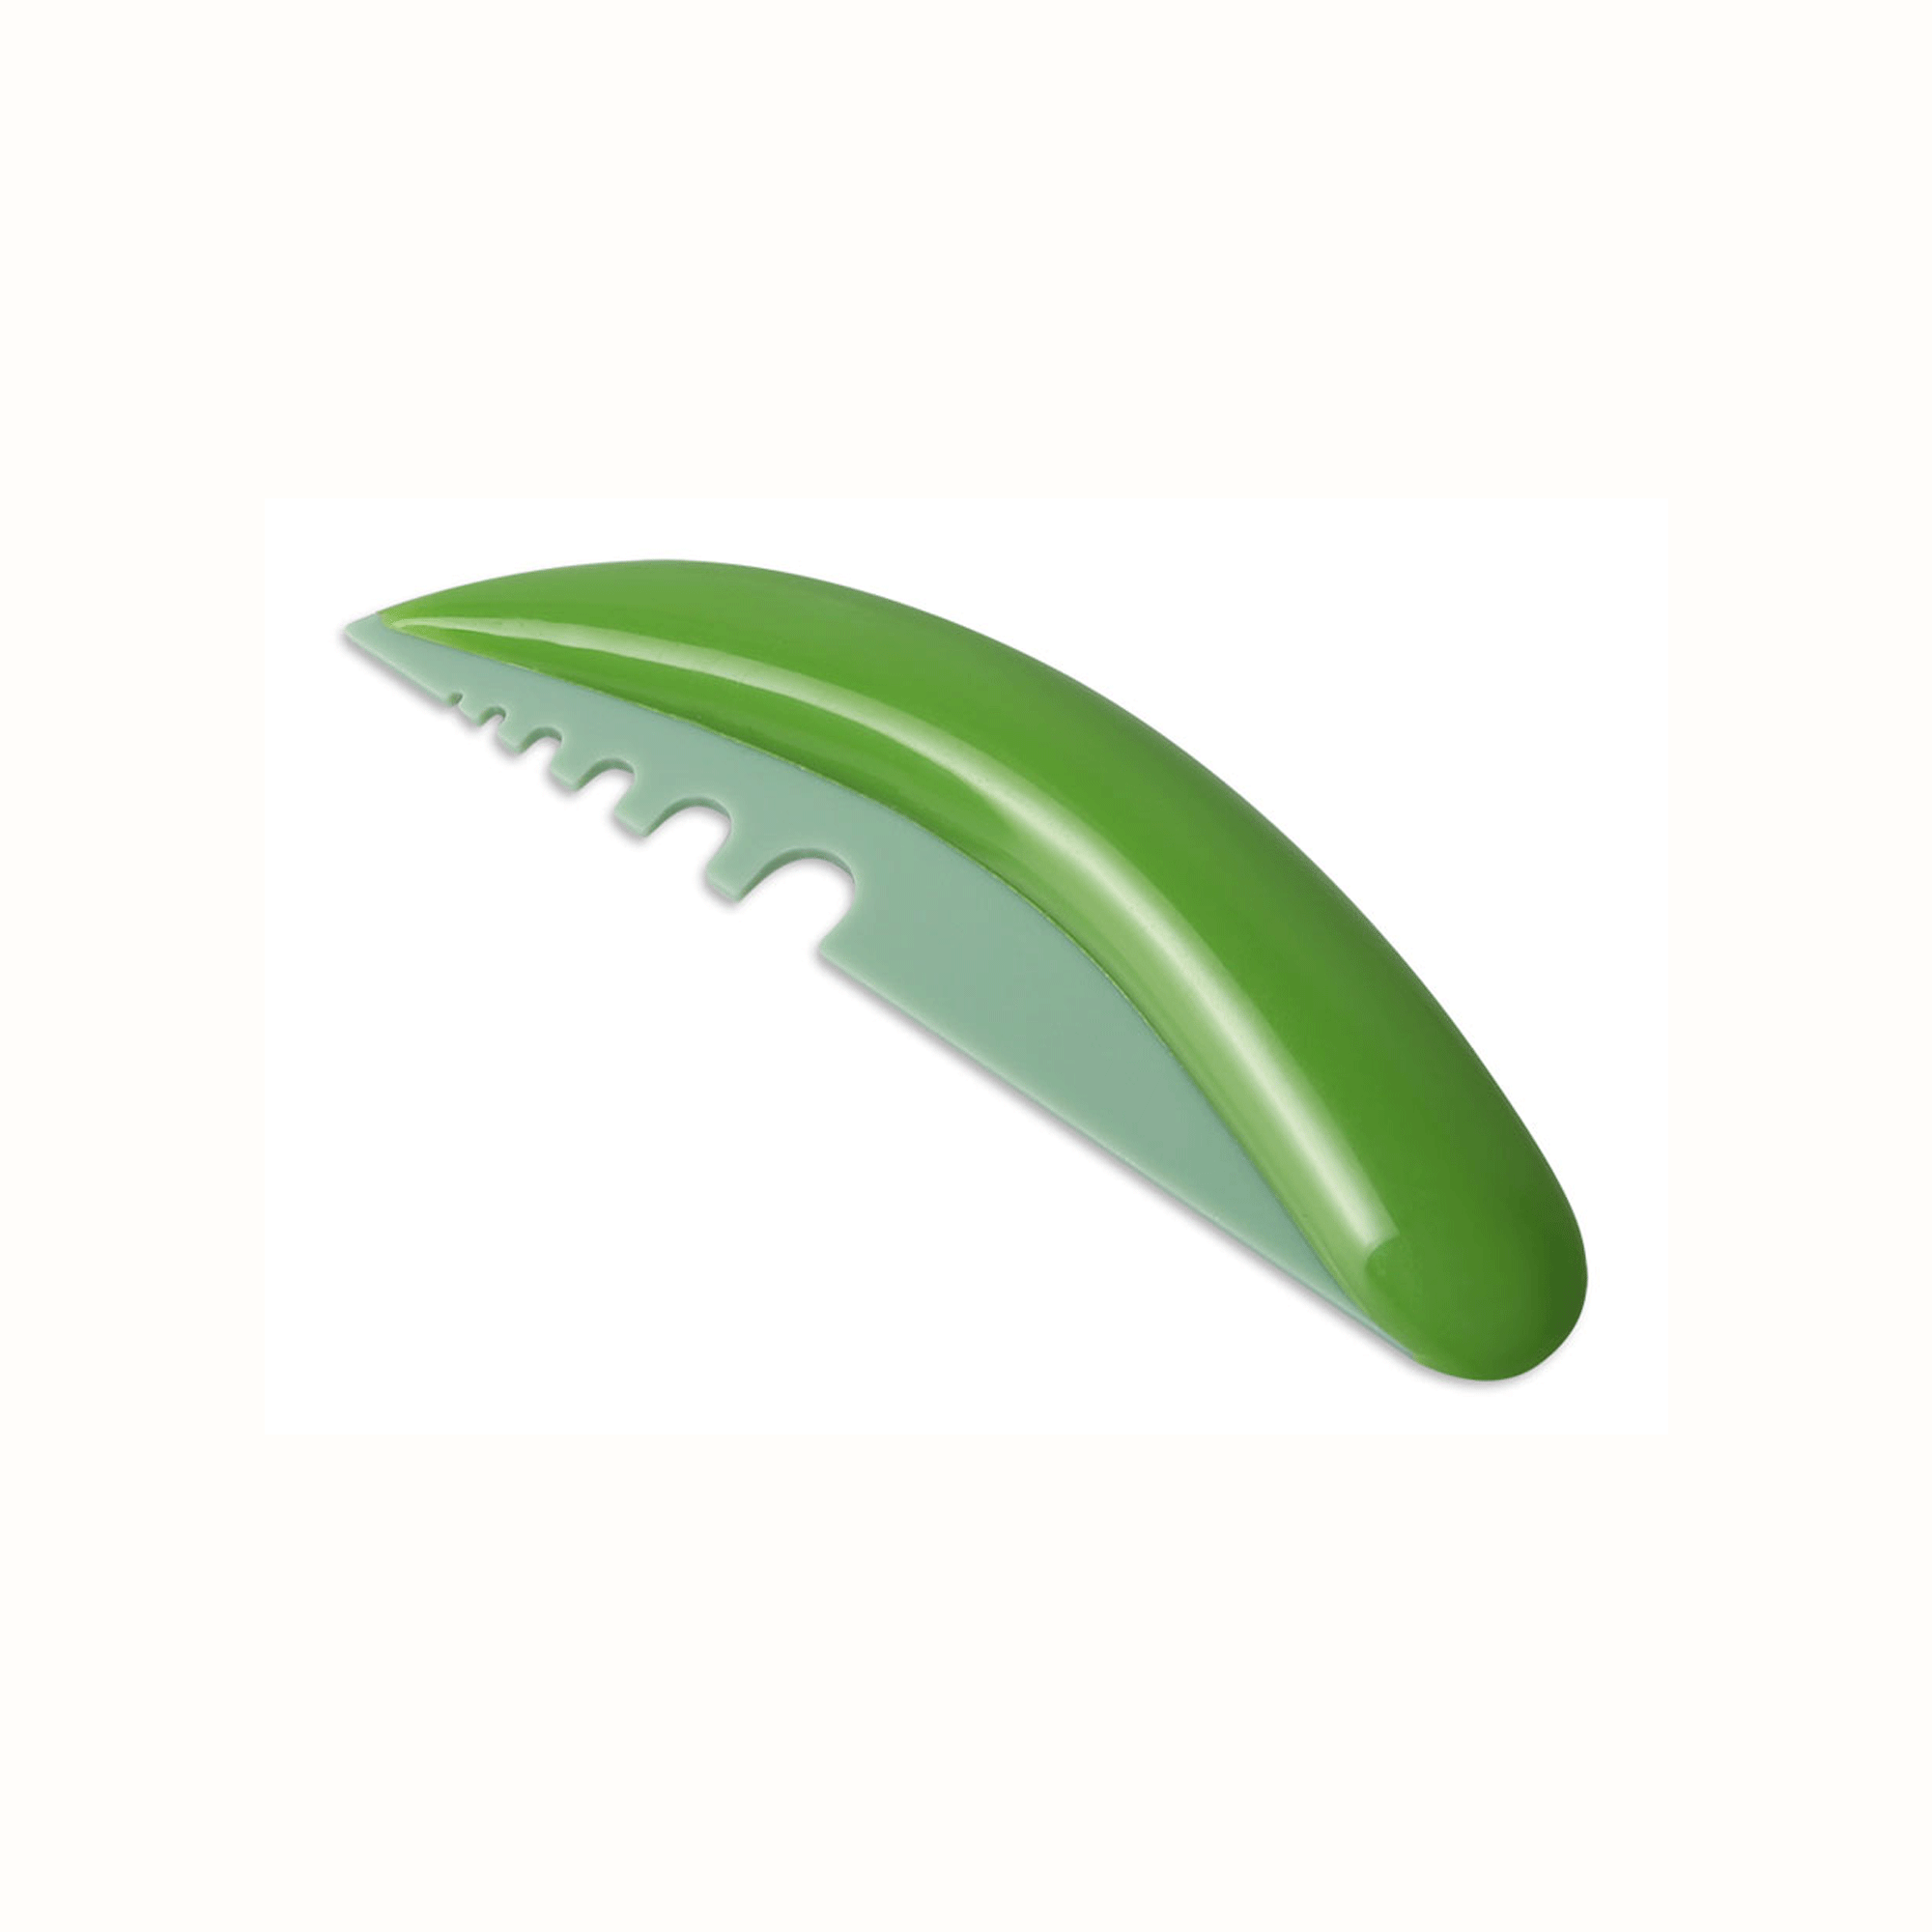 Greenery knife Dosh Home 101154